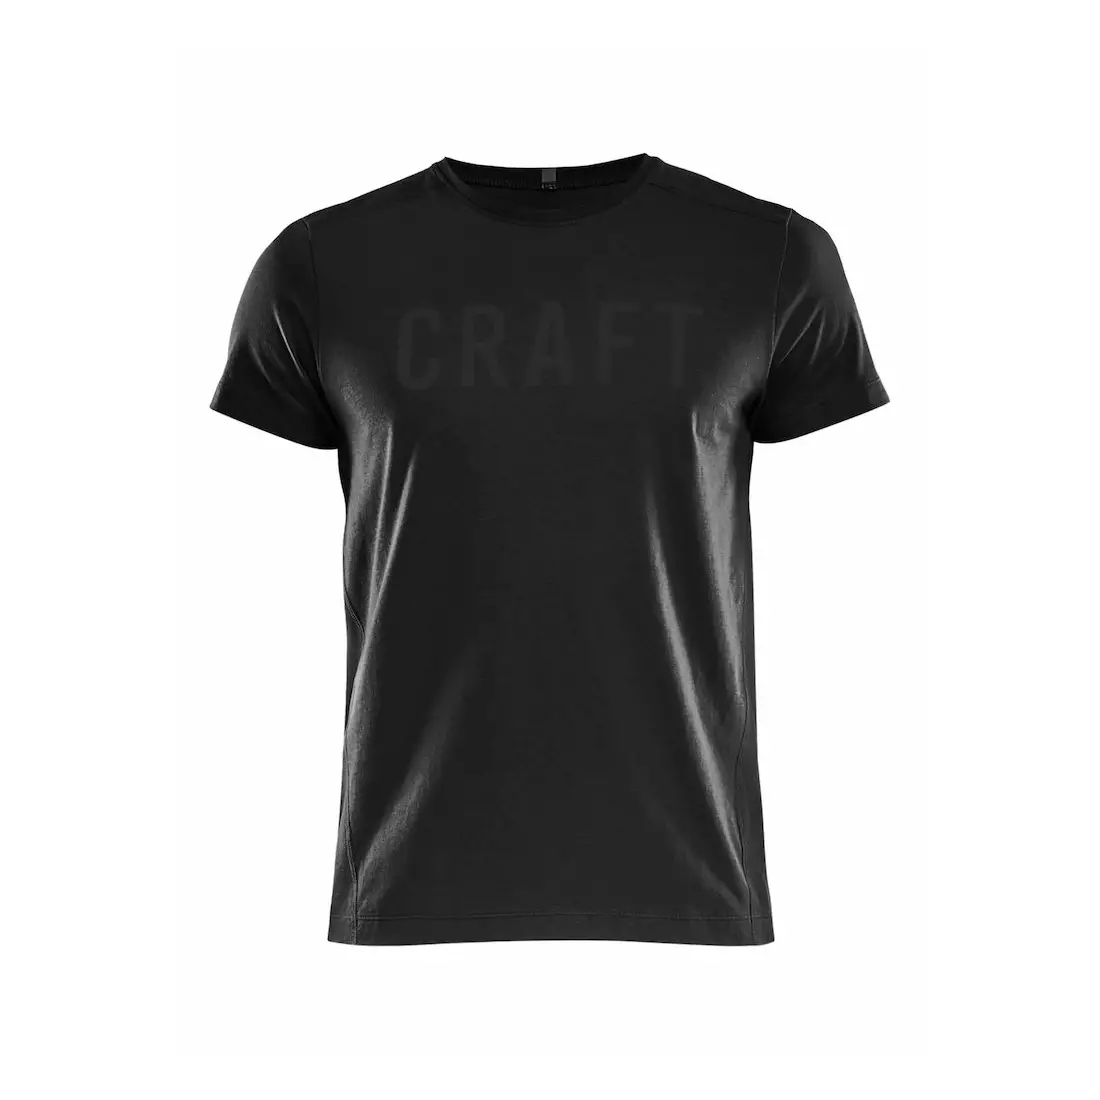 CRAFT Deft 2.0 men's shirt / t-shirt 1905899-999000